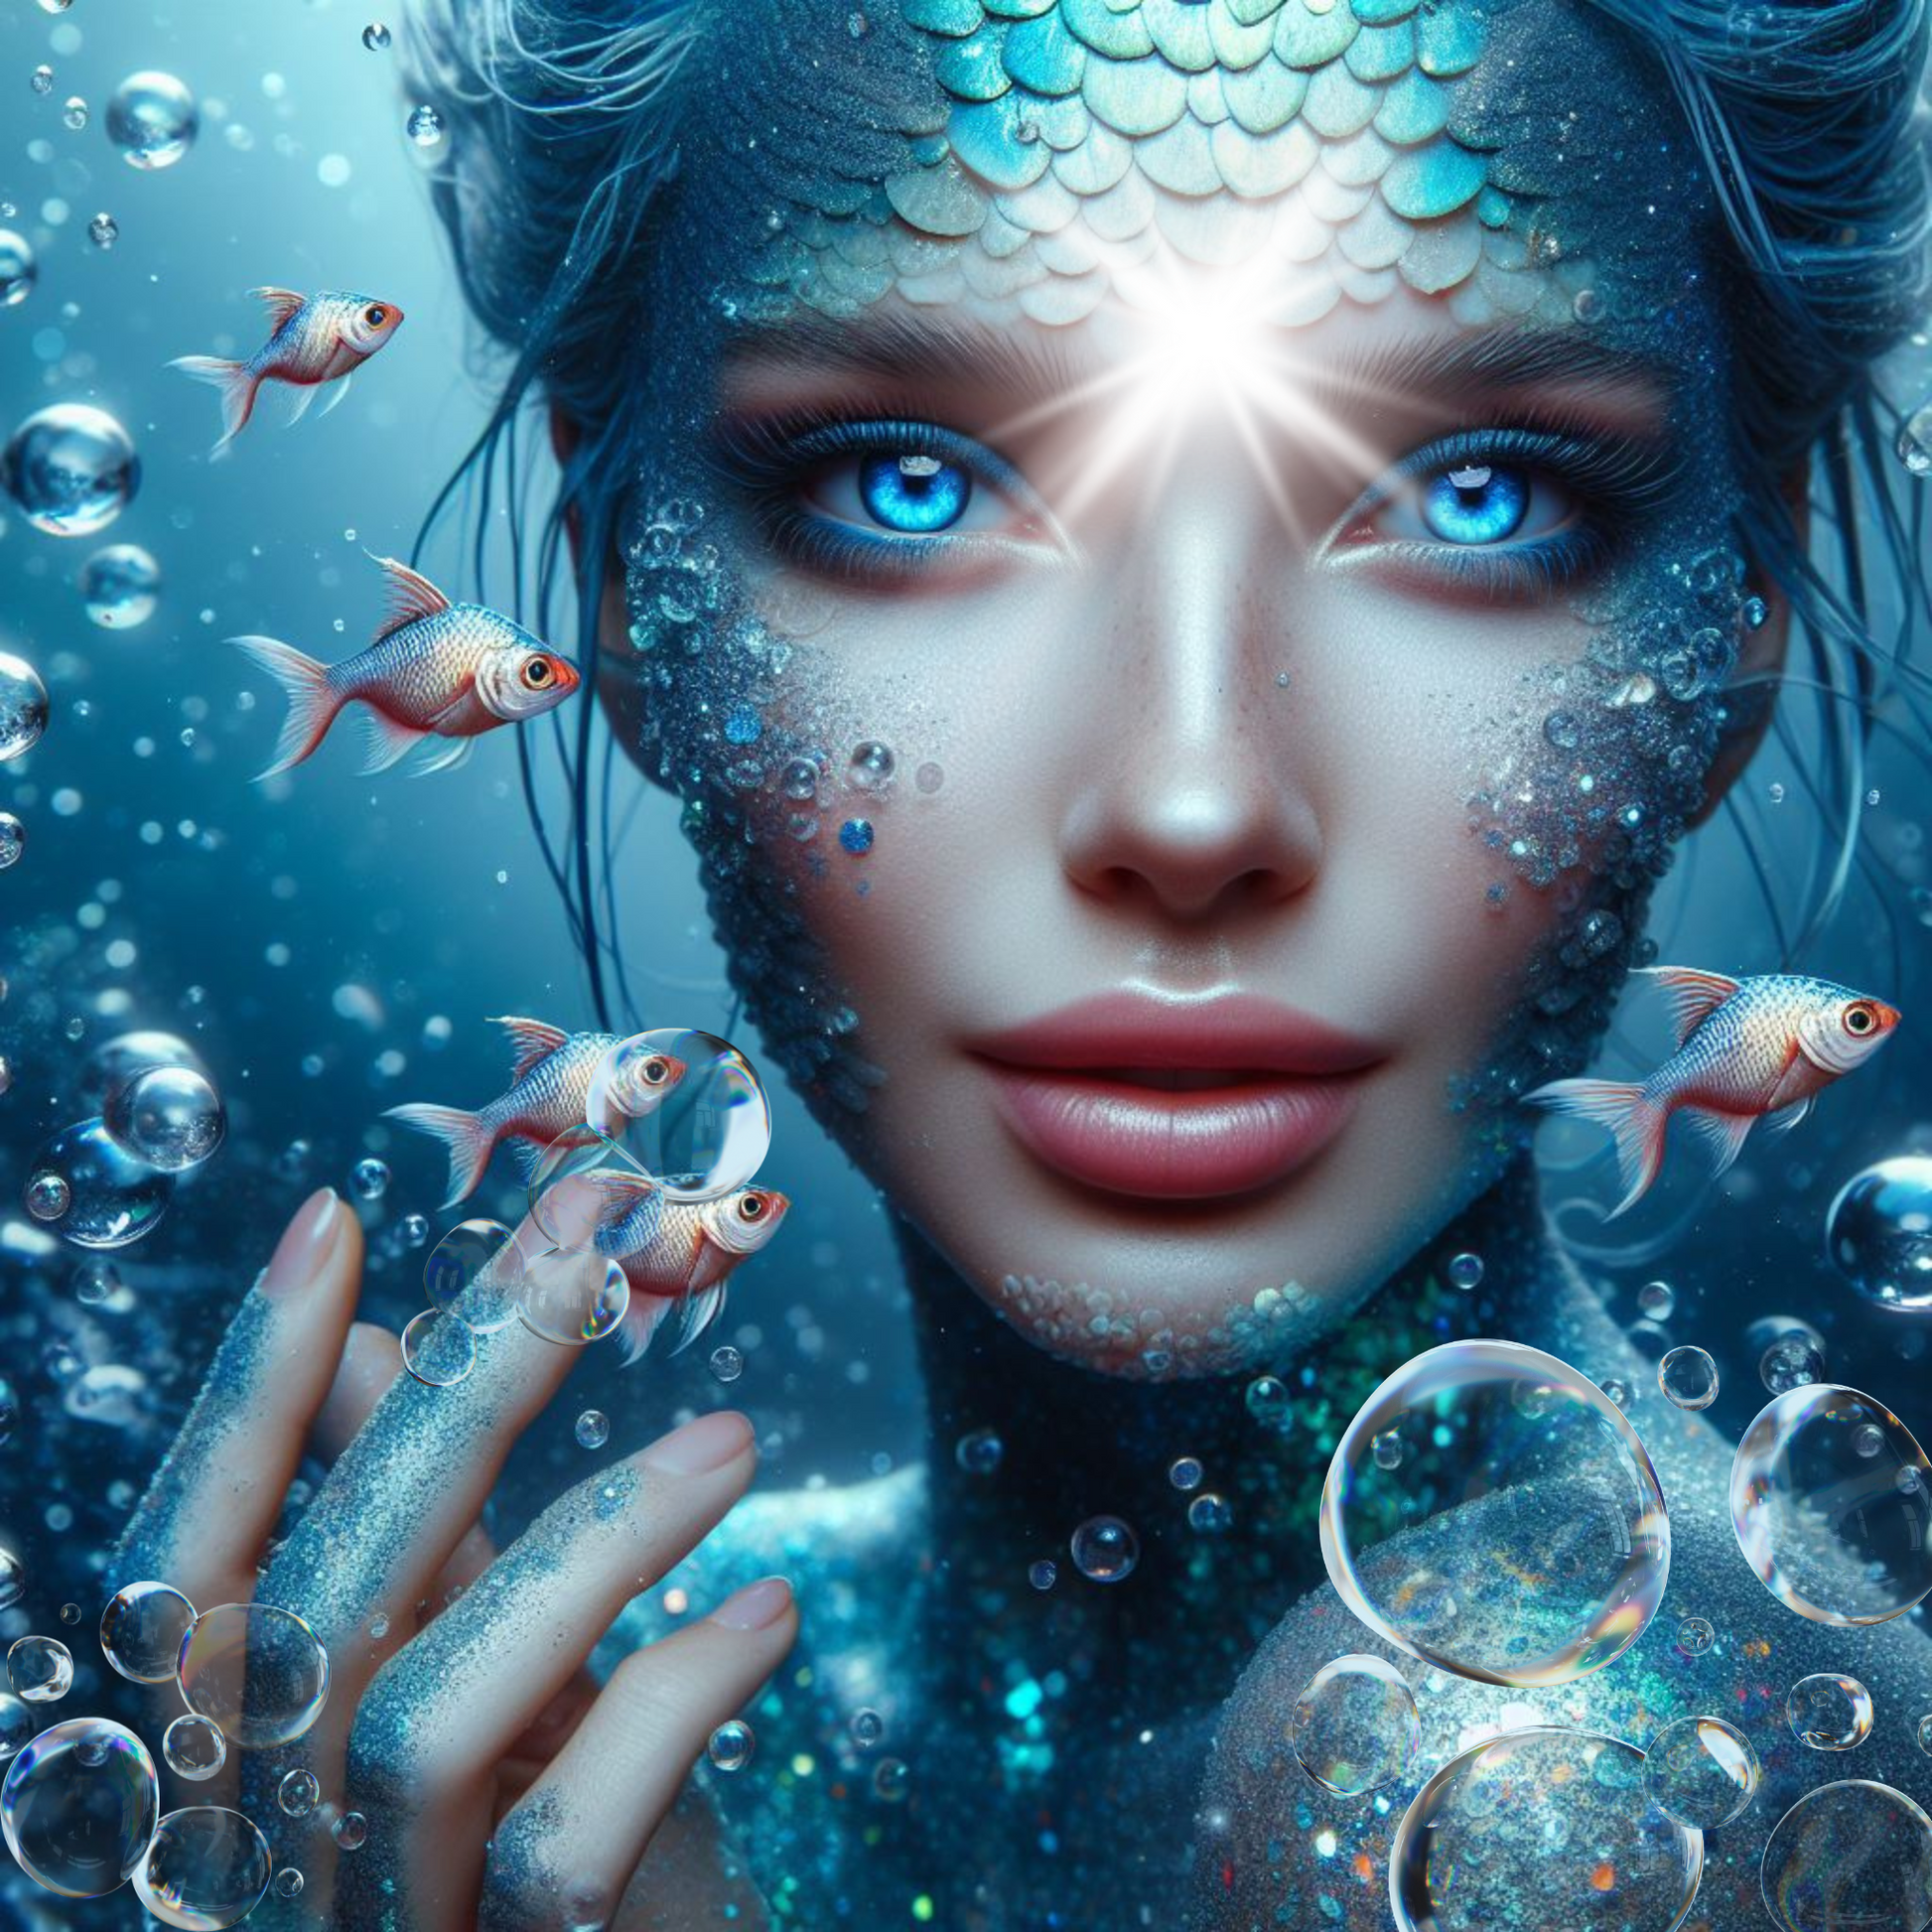 Meerjungfrau aus dem Sirius Sternsystem. Wasserblasen und Fische.